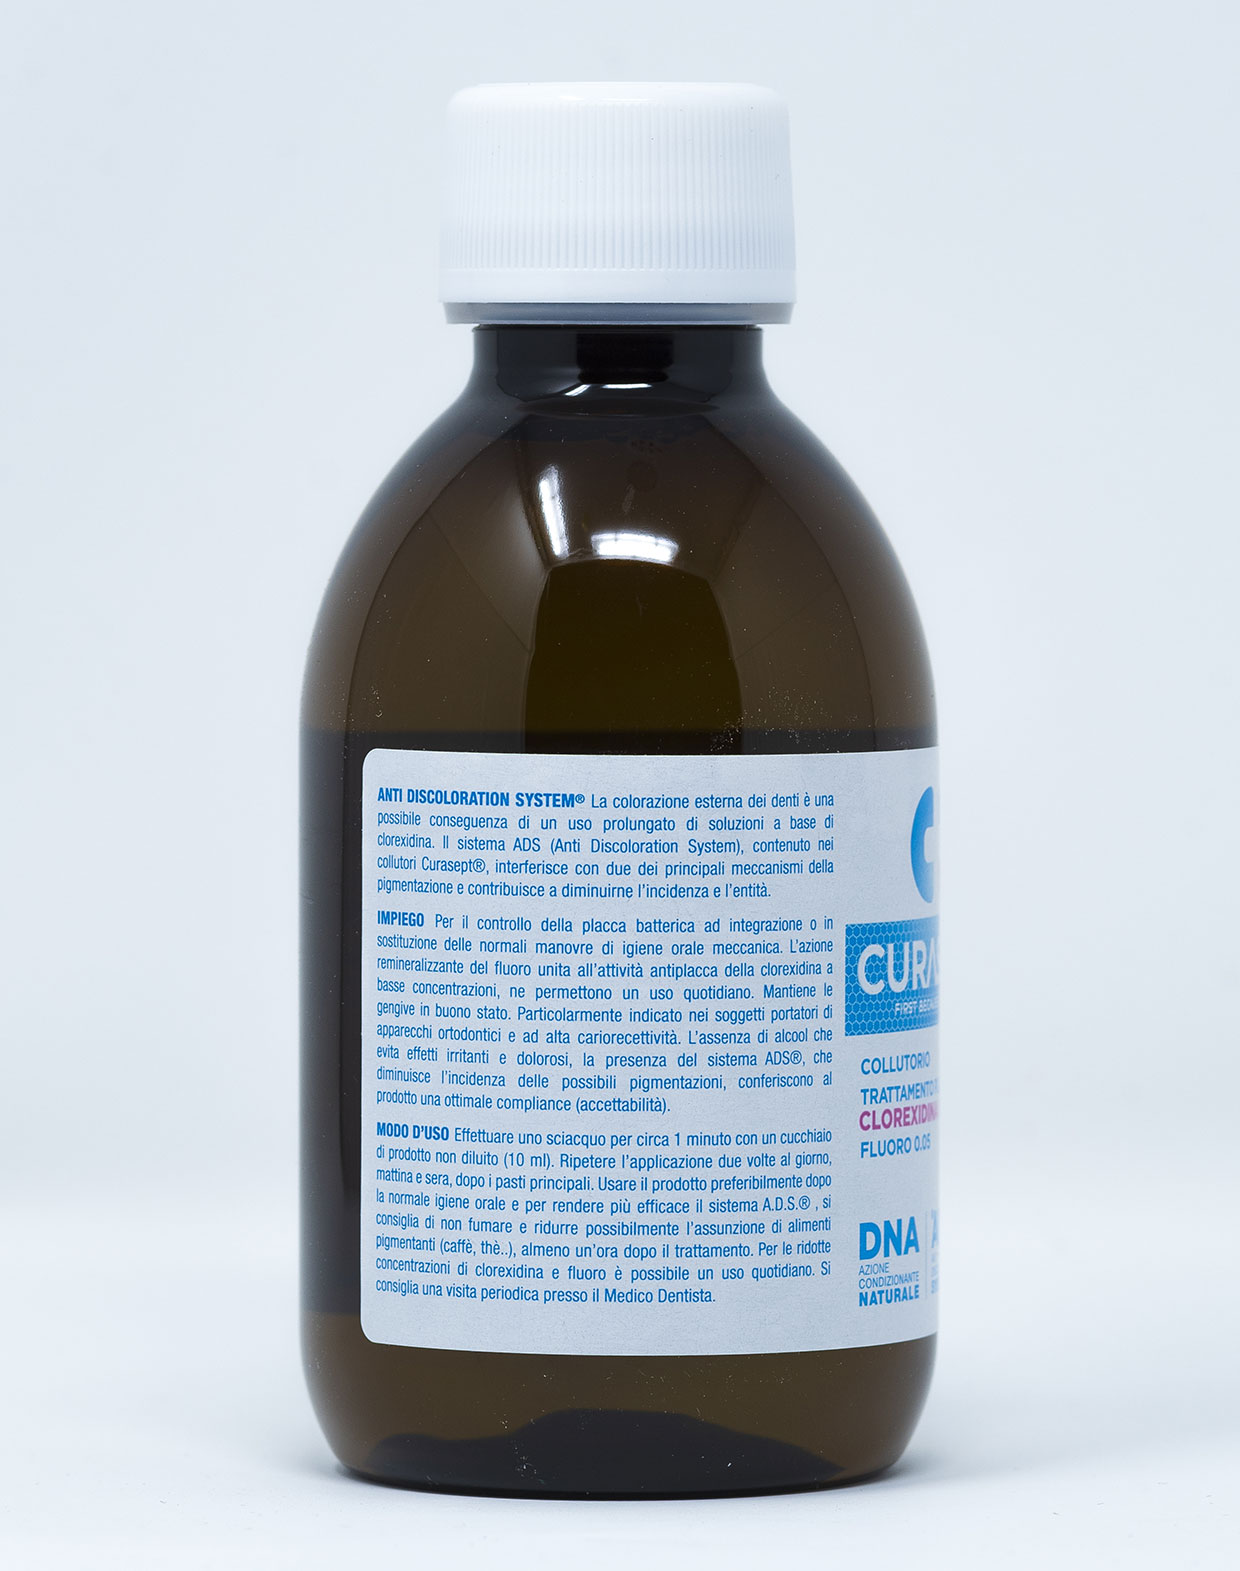 Curasept Collutorio ADS DNA Trattamento Carie e Placca - Clorexidina 0,05% e Fluoro 0,05% – 200 ml